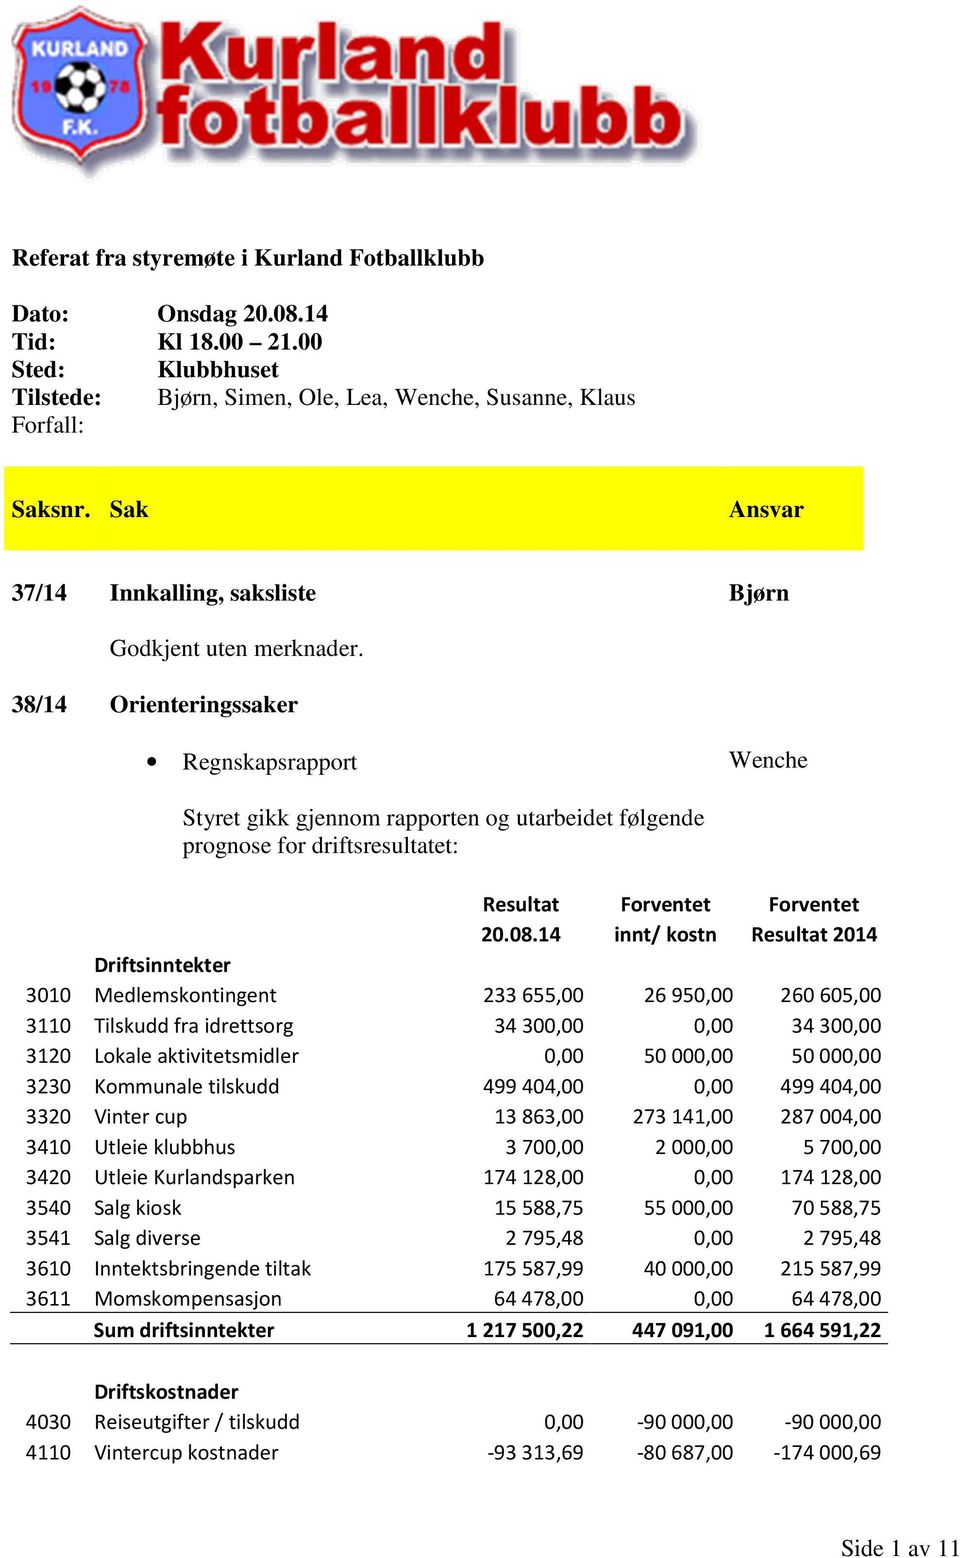 38/14 Orienteringssaker Regnskapsrapport Wenche Styret gikk gjennom rapporten og utarbeidet følgende prognose for driftsresultatet: Resultat Forventet Forventet 20.08.